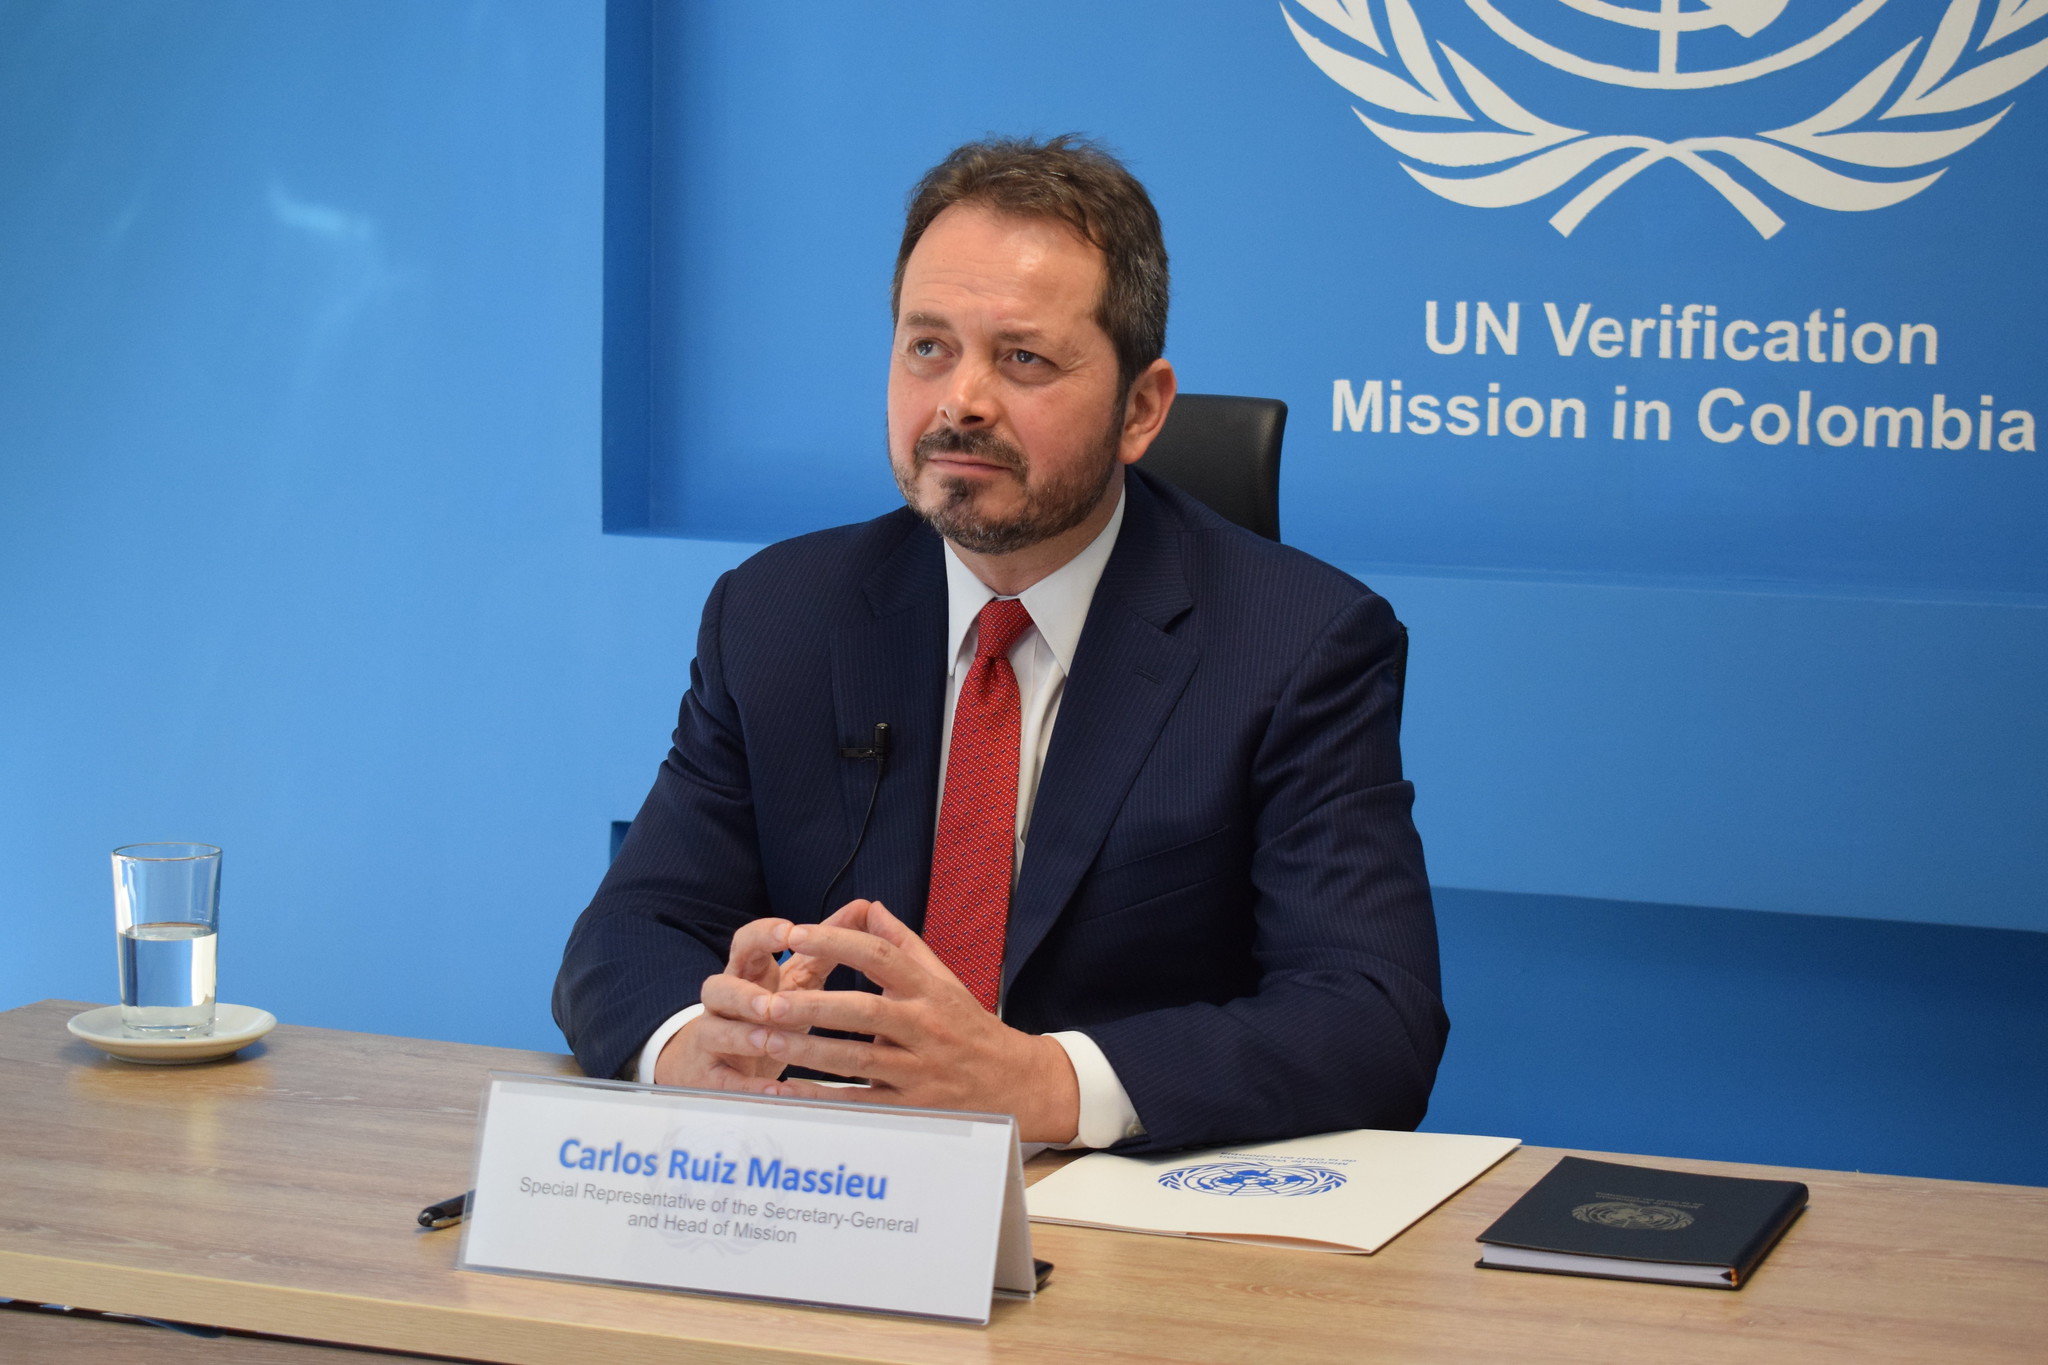 Carlos Ruiz Massieu, Representante Especial del Secretario General y Jefe de la Misión de Verificación de las Naciones Unidas en Colombia, presenta al Consejo de Seguridad el Informe Trimestral del Secretario General de las Naciones Unidas sobre la Misión de Verificación de la ONU en Colombia, que cubre el período del 27 de marzo al 26 de junio de 2020.